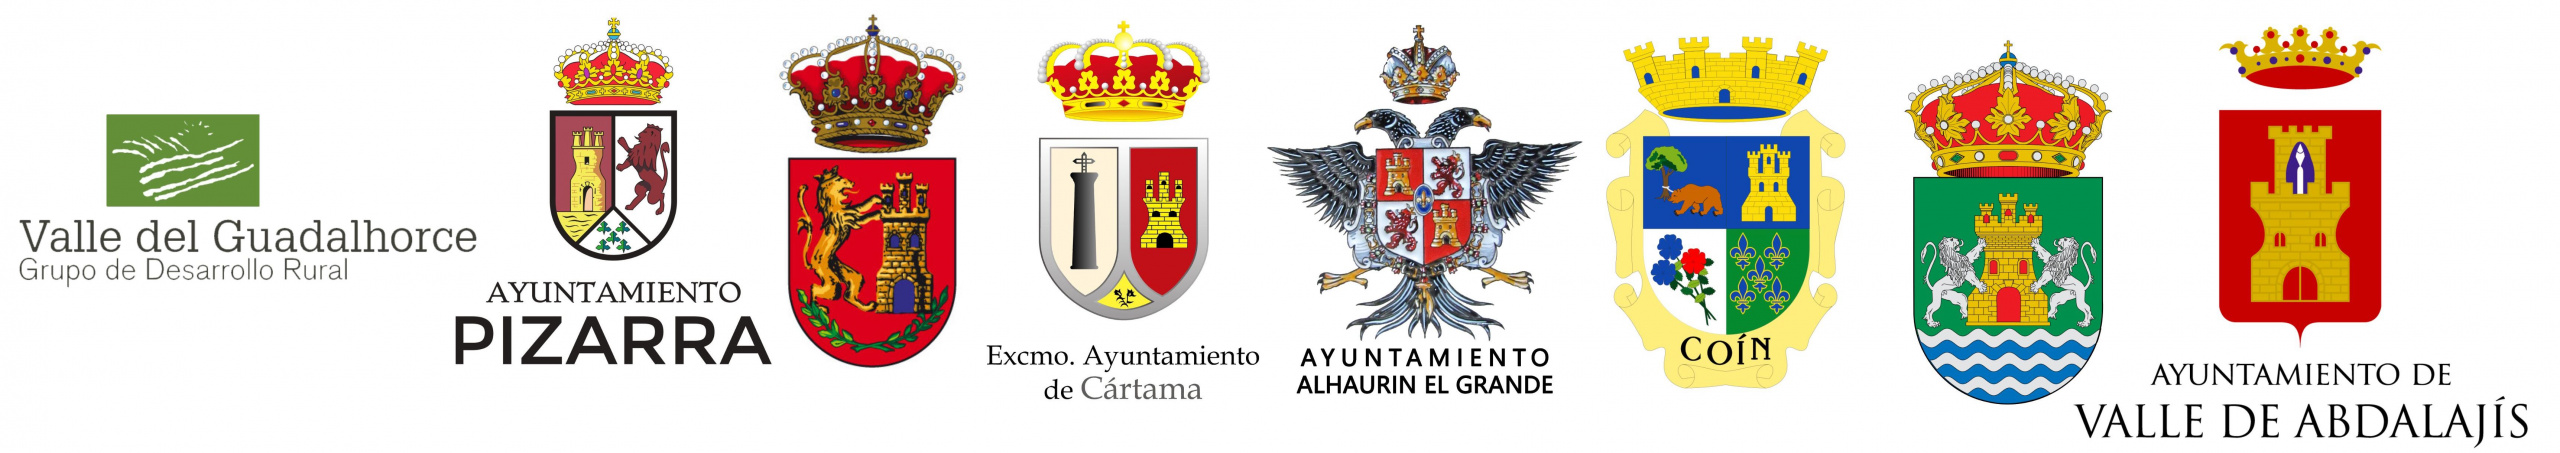 Logos ayuntamientos